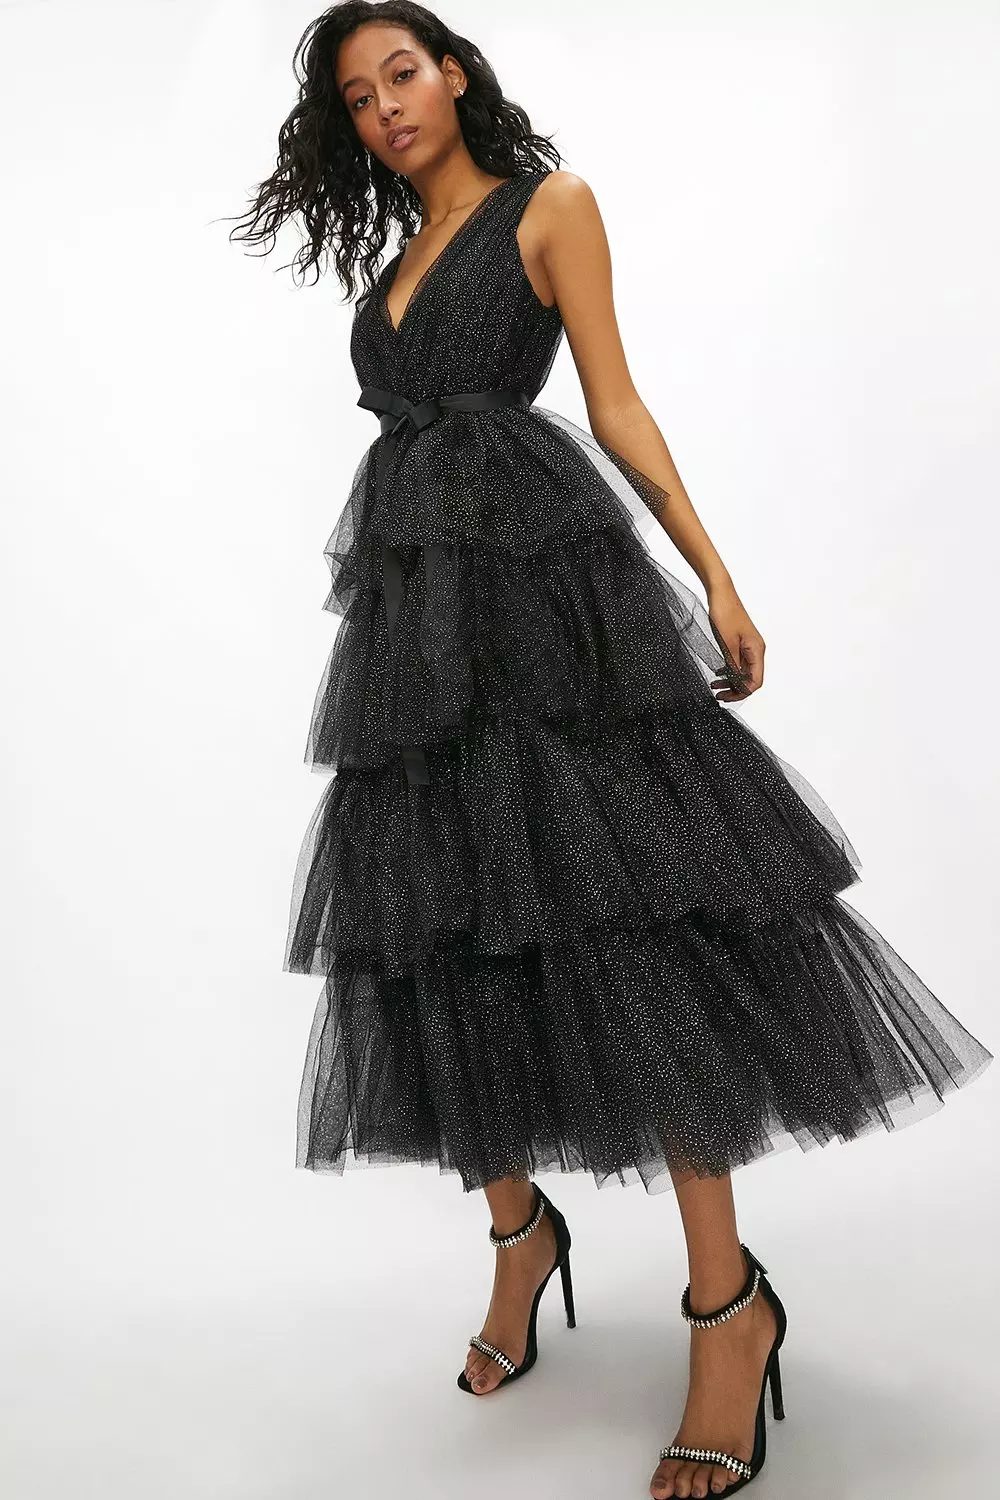 Black Dress Tulle | vlr.eng.br